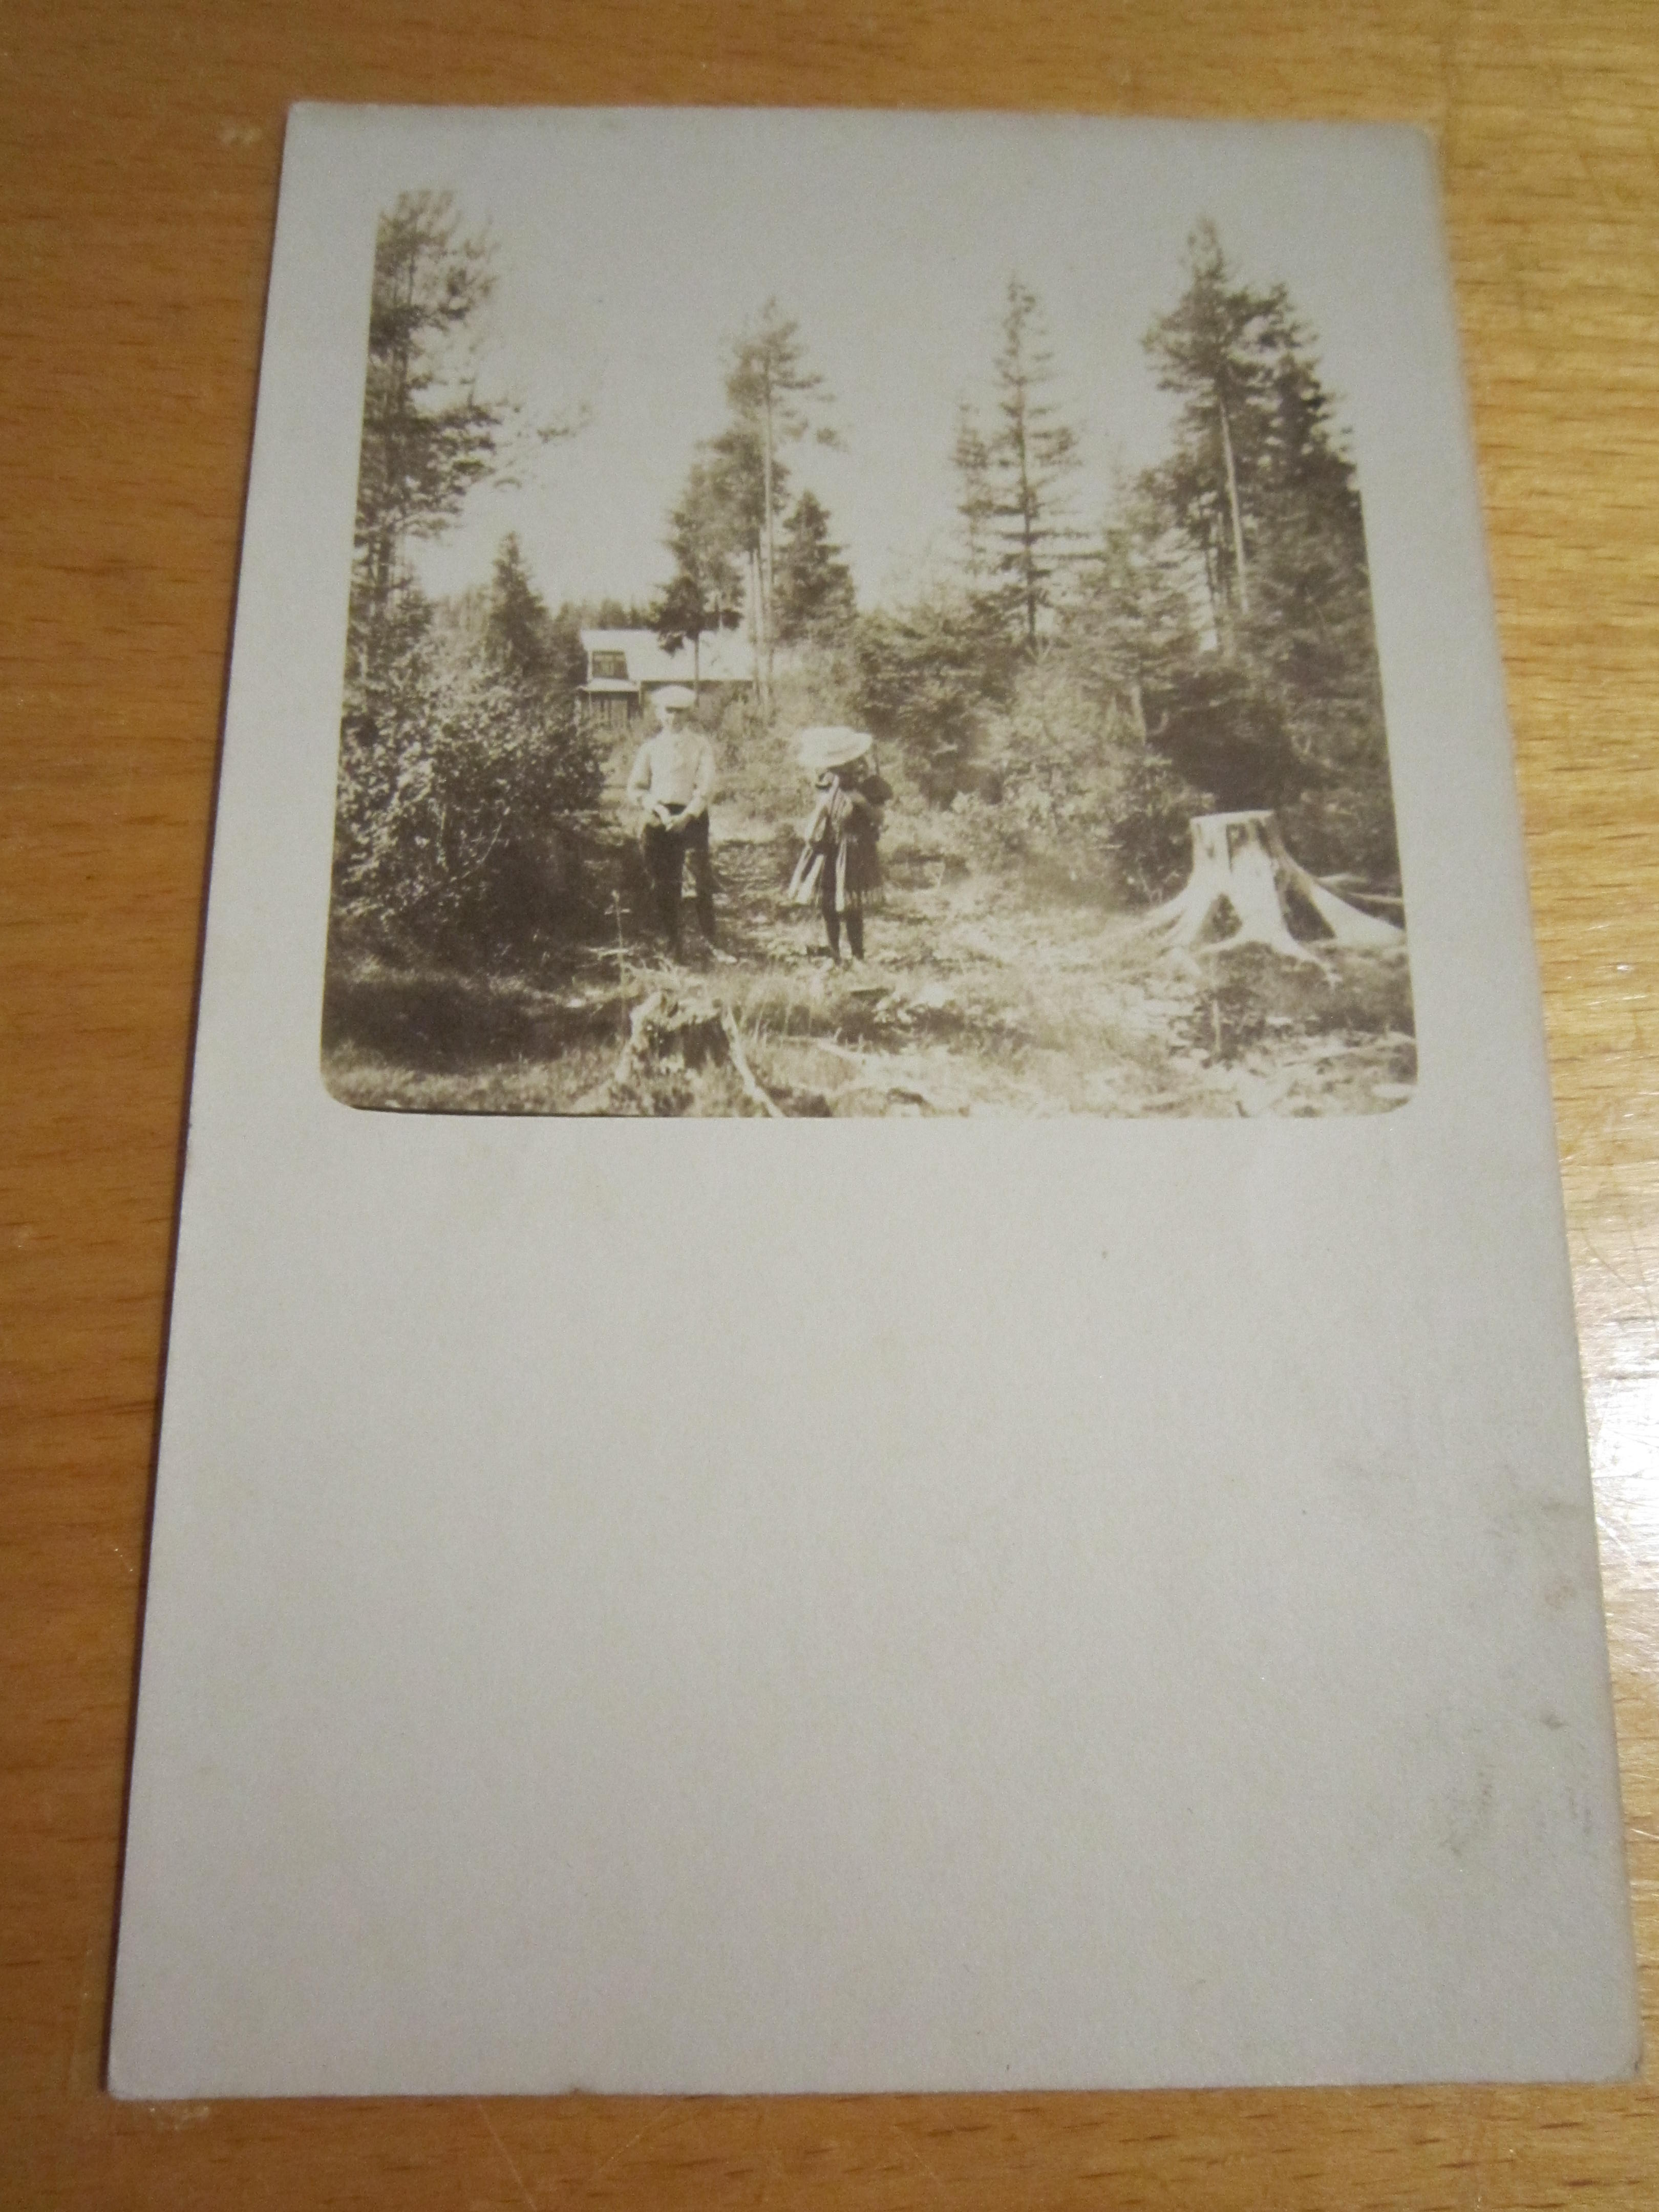 Открытое письмо.Почтовая карточка."Мальчик с девочкой в панаме",до 1917 г.,фото одной семьи №3.